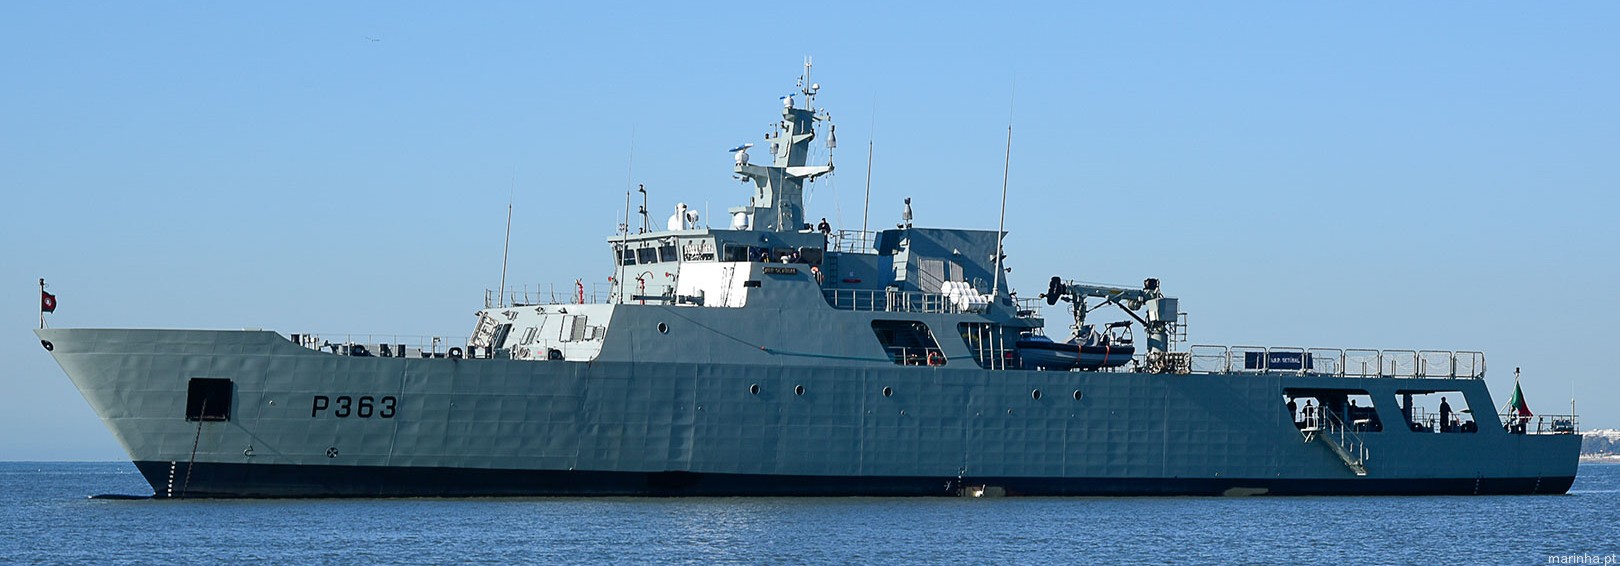 p-363 nrp setubal viana do castelo class offshore patrol vessel opv portuguese navy marinha 04